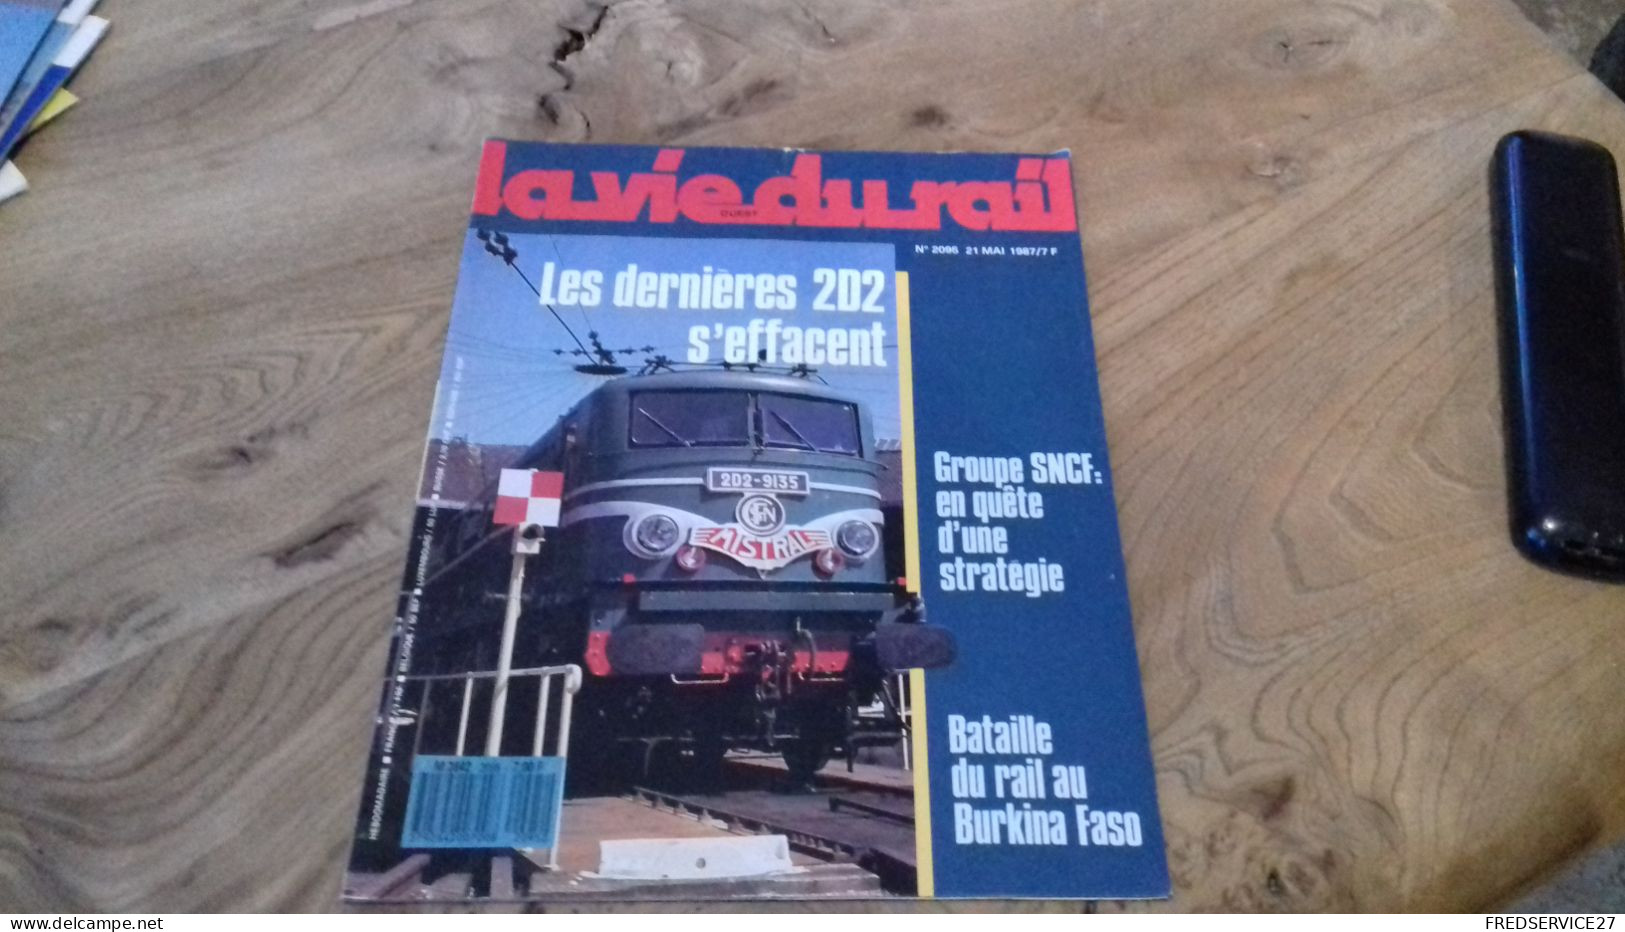 155/ LA VIE DU RAIL N° 2095  / JUIN 1987 / LES DERNIERES 2D2 S EFFACENT / GROUPE SNCF EN QUETE D UNE STRATEGIE - Trains